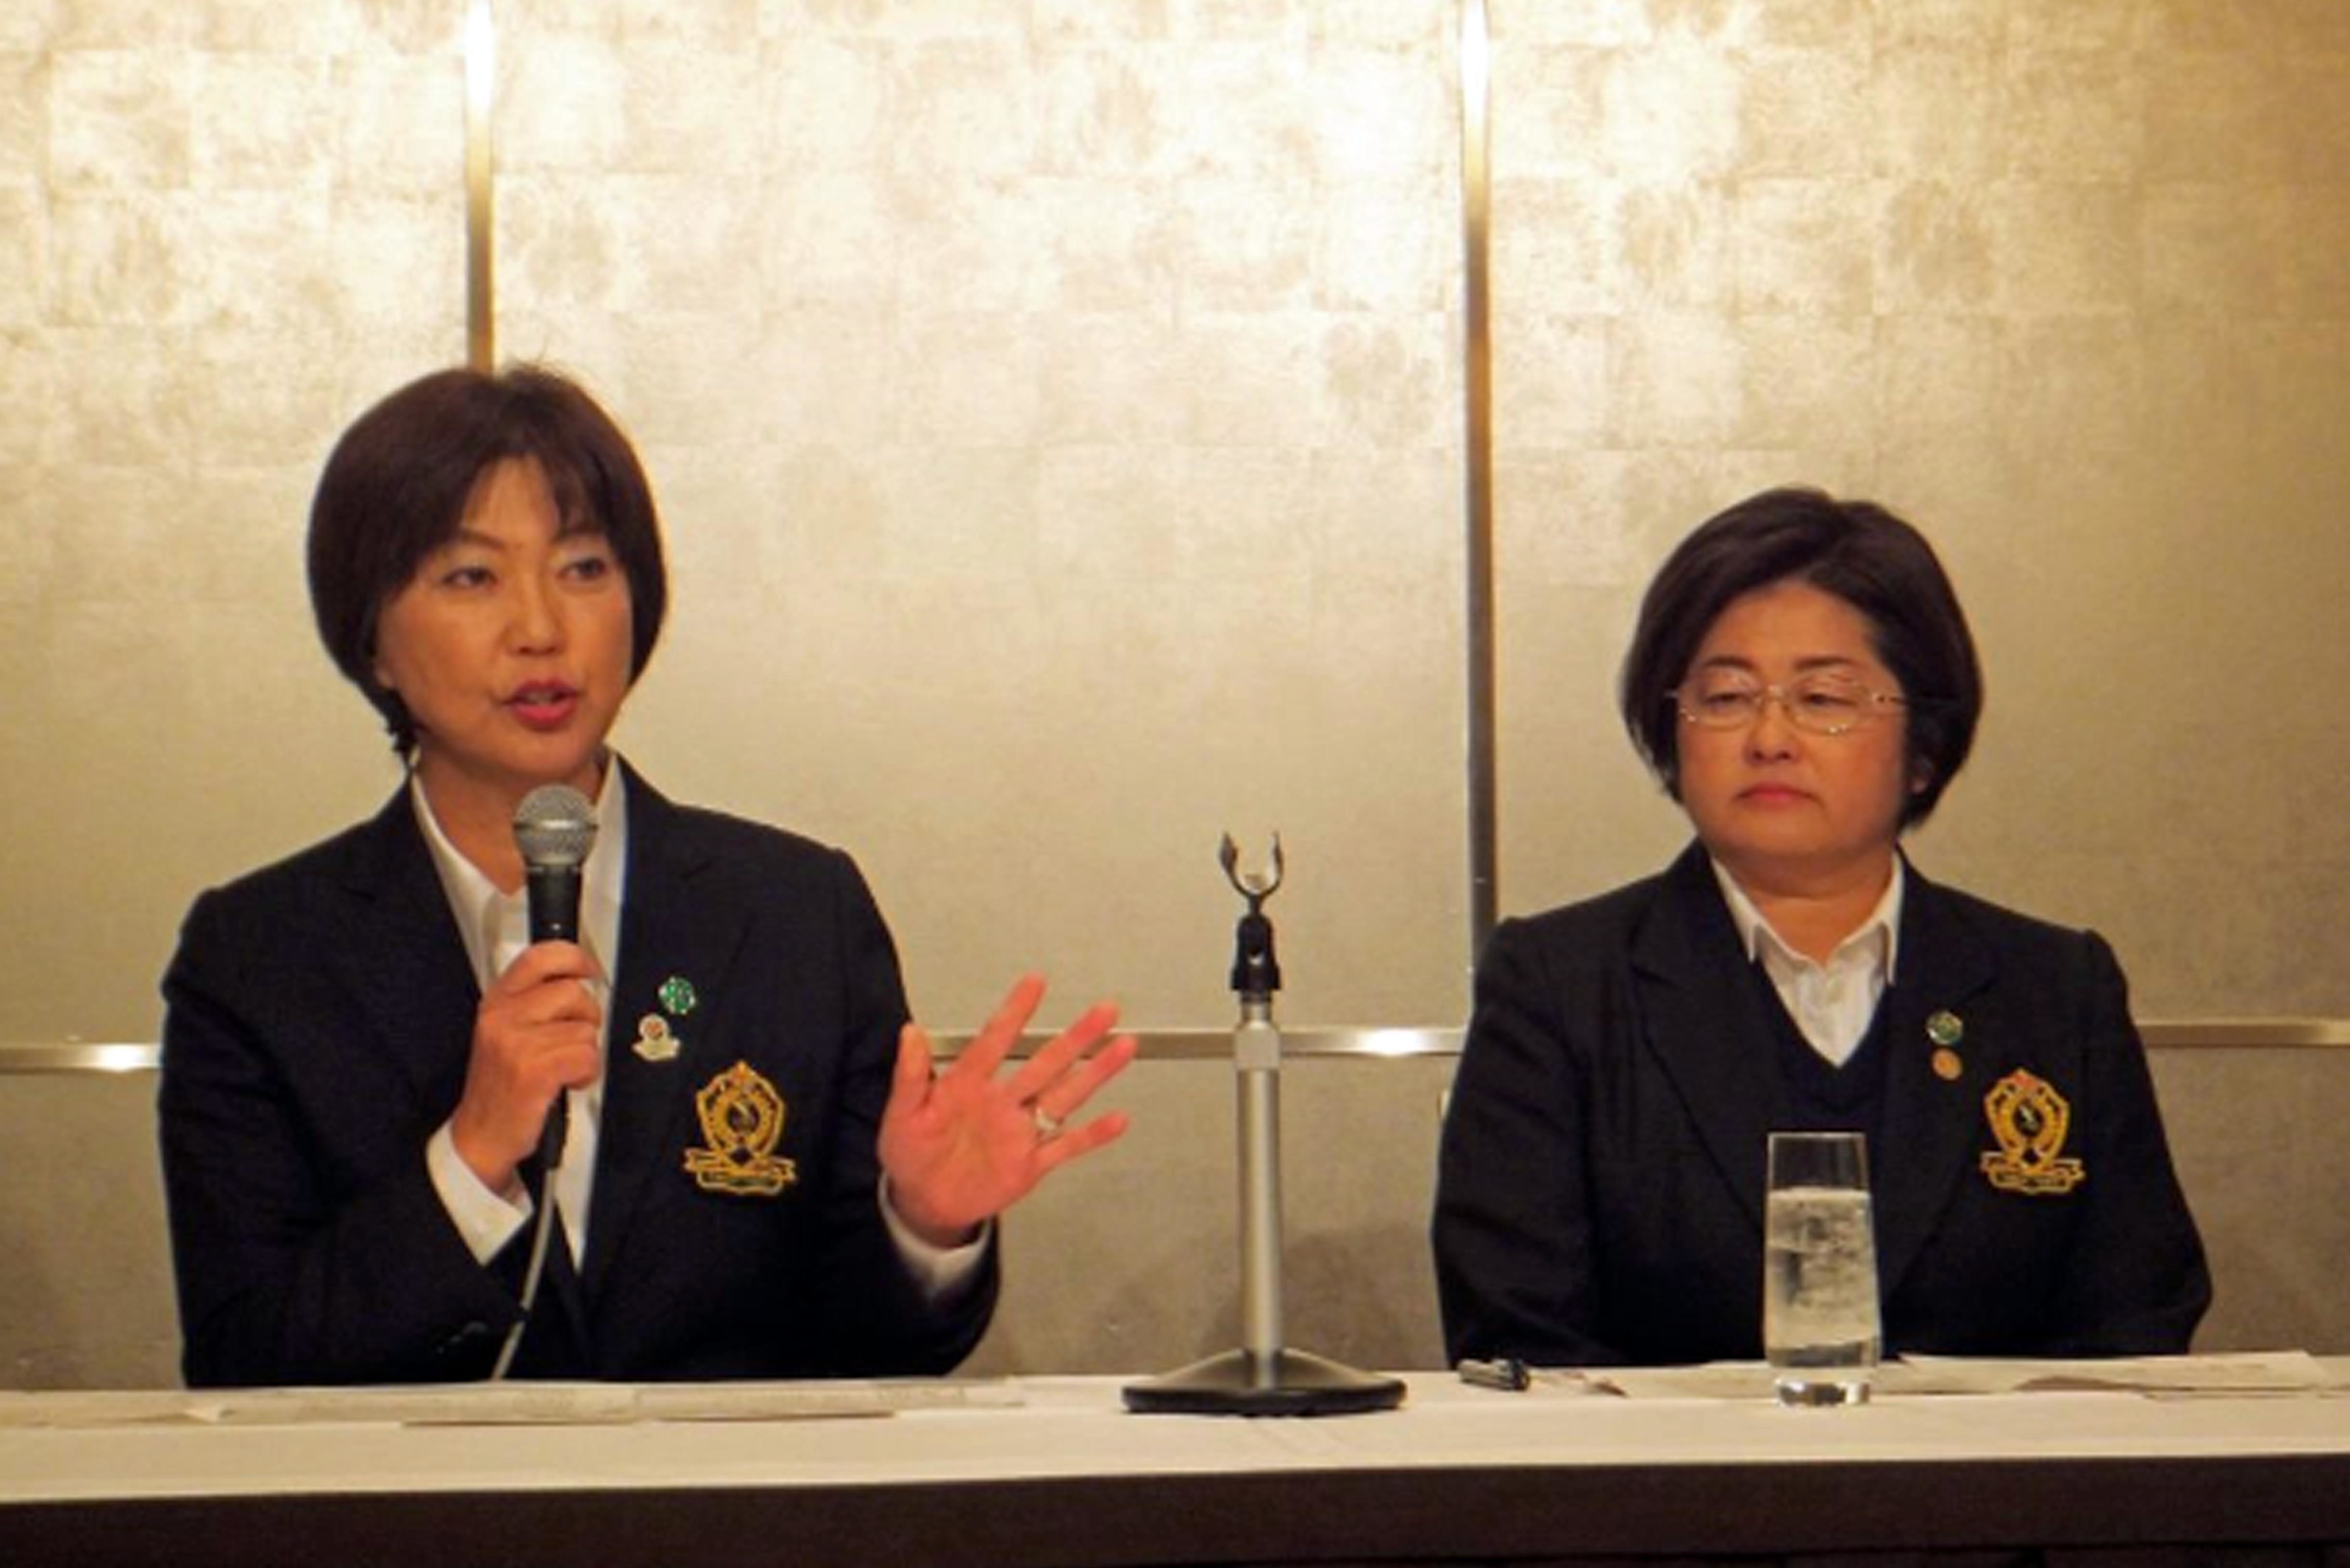 来季の日程を発表するLPGA小林浩美会長（左）と原田香里副会長 (C)2015 The Ladies Professional Golfers’ Association of Japan All Rights Reserved